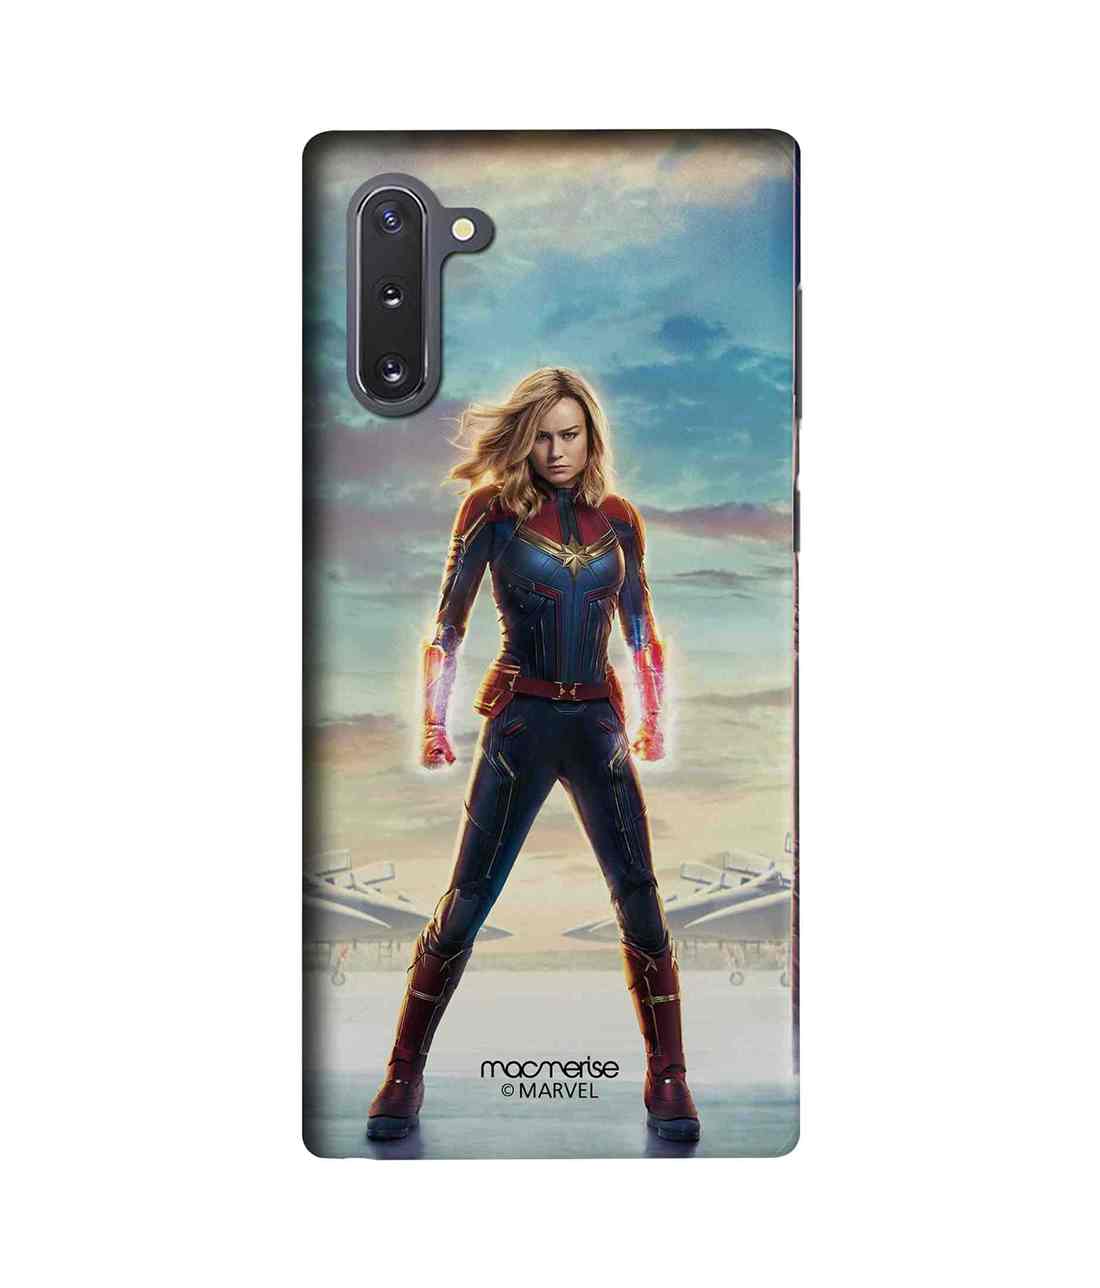 Buy Captain Marvel Poster - Sleek Phone Case for Samsung Note10 Online